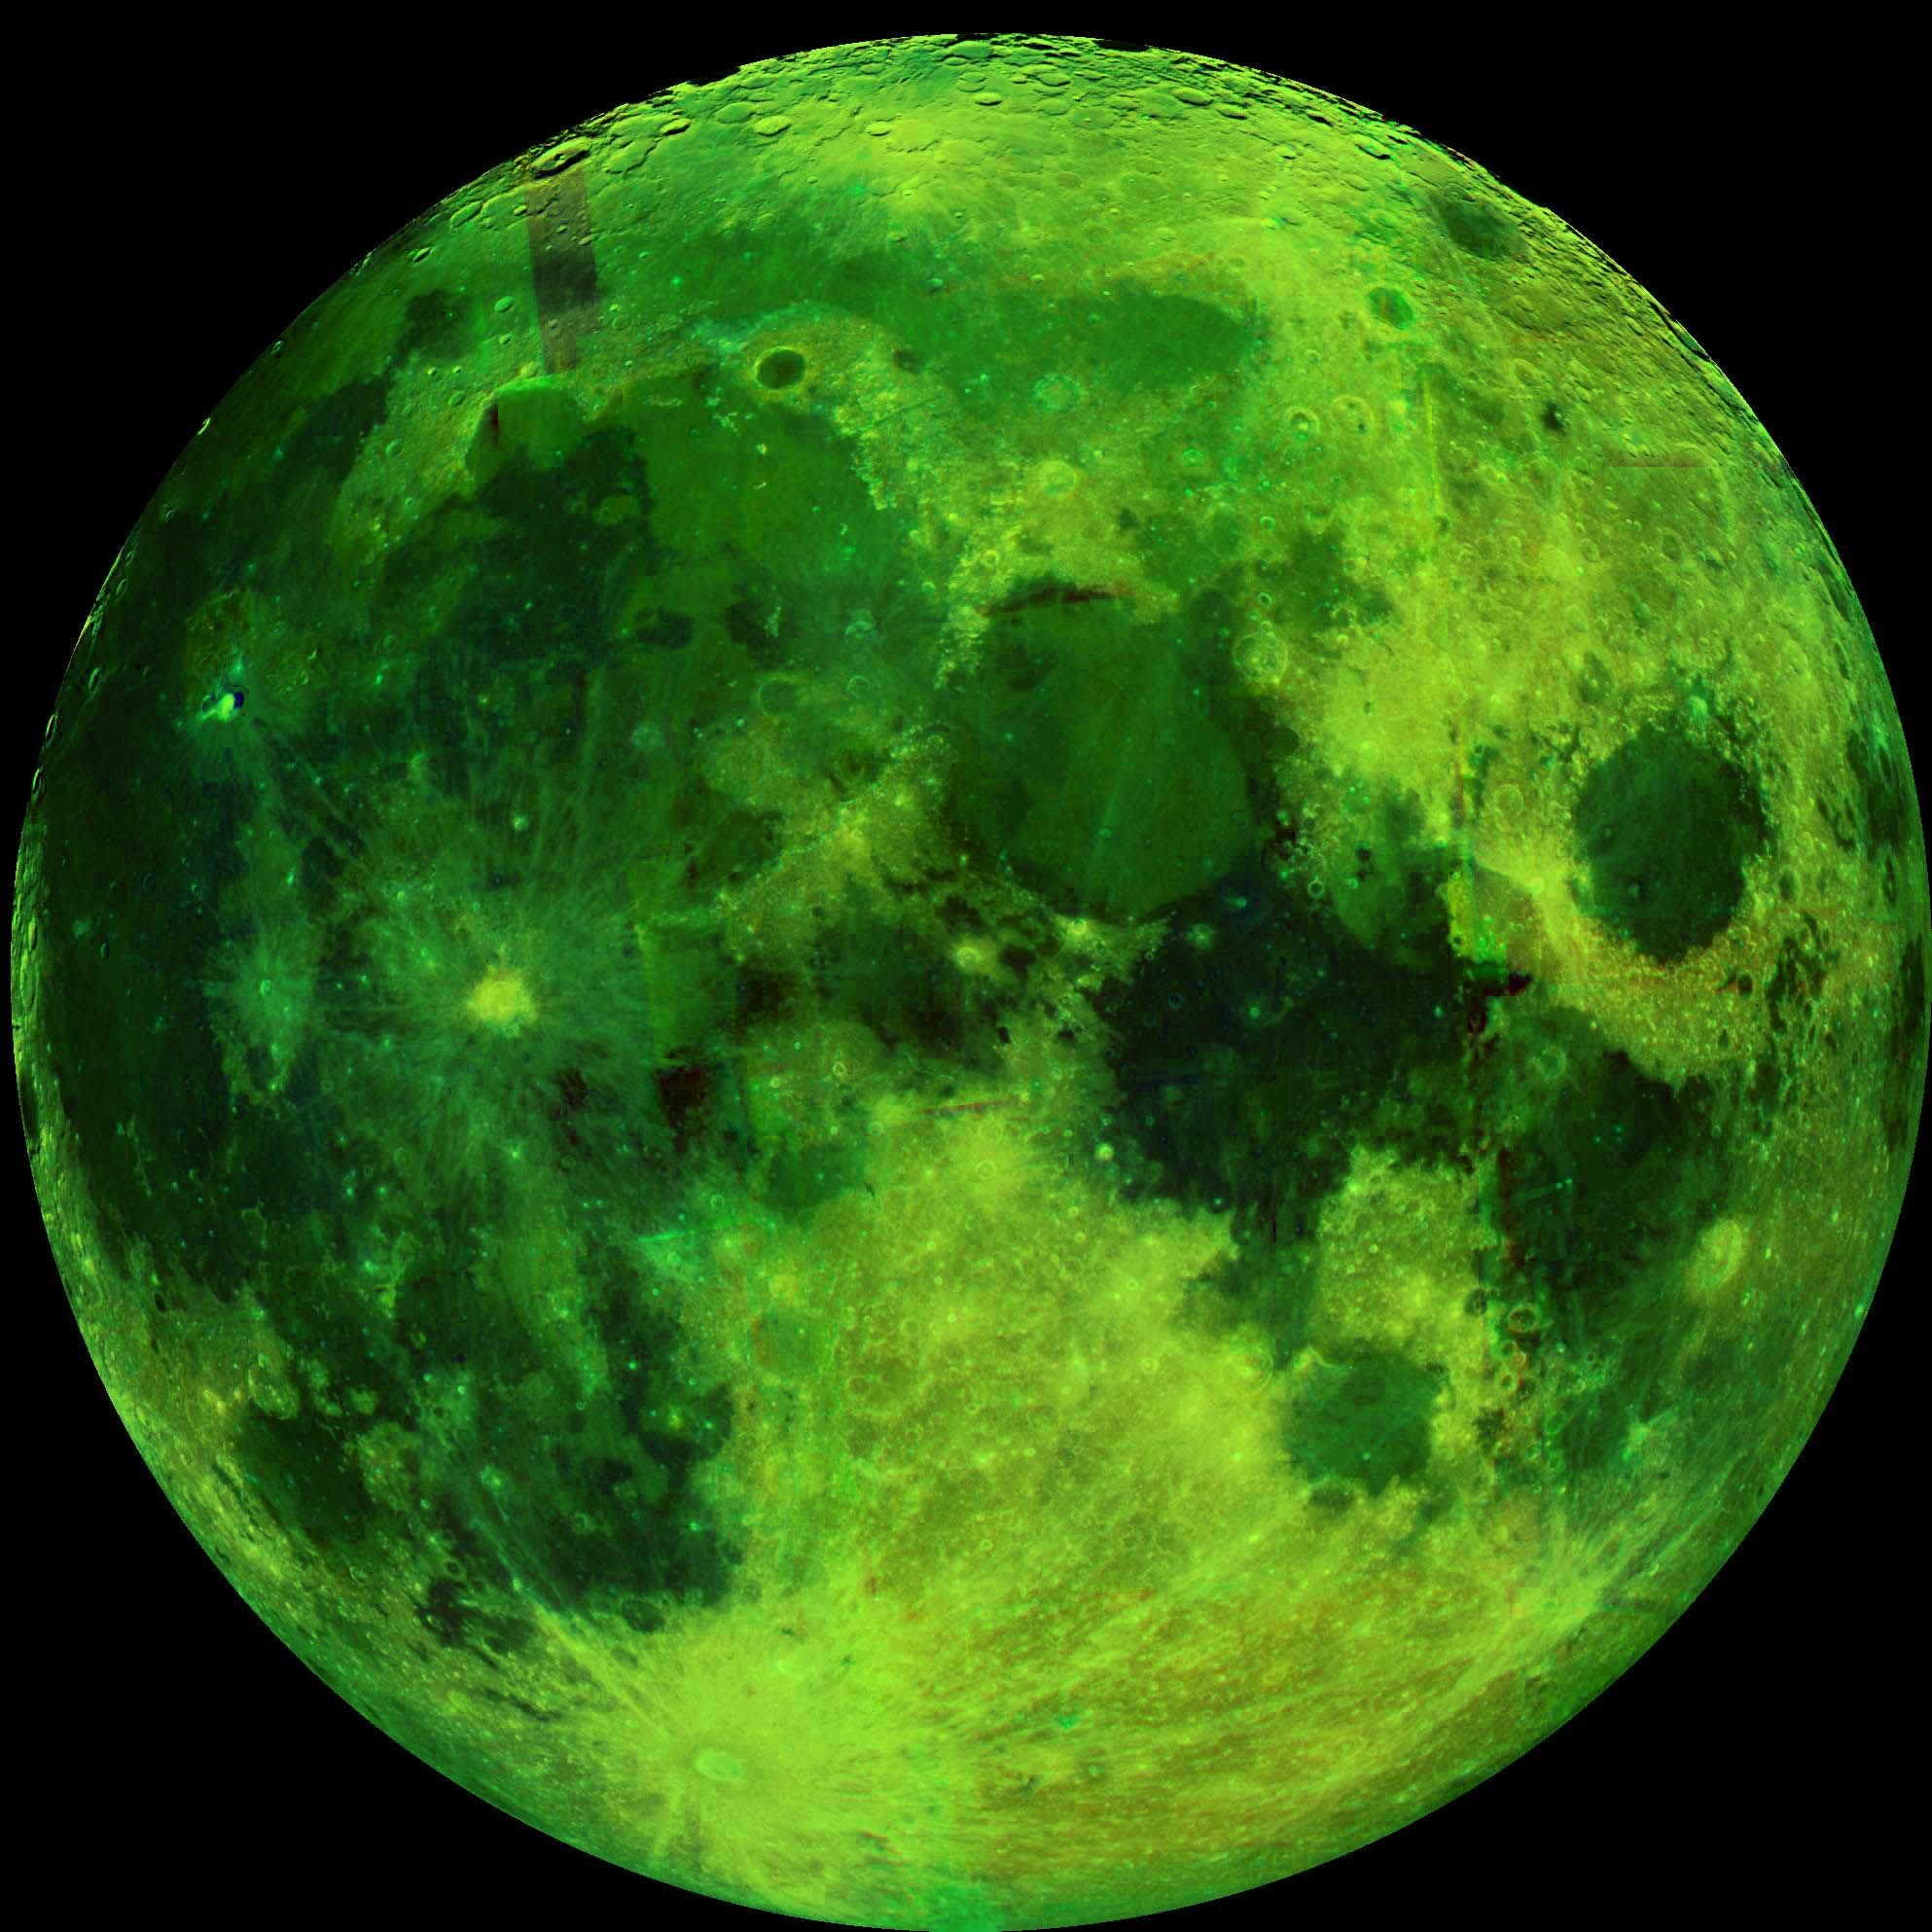 Moon colors. Зеленая Луна. Фотографии Луны. Планета зеленого цвета. Салатовая Луна.